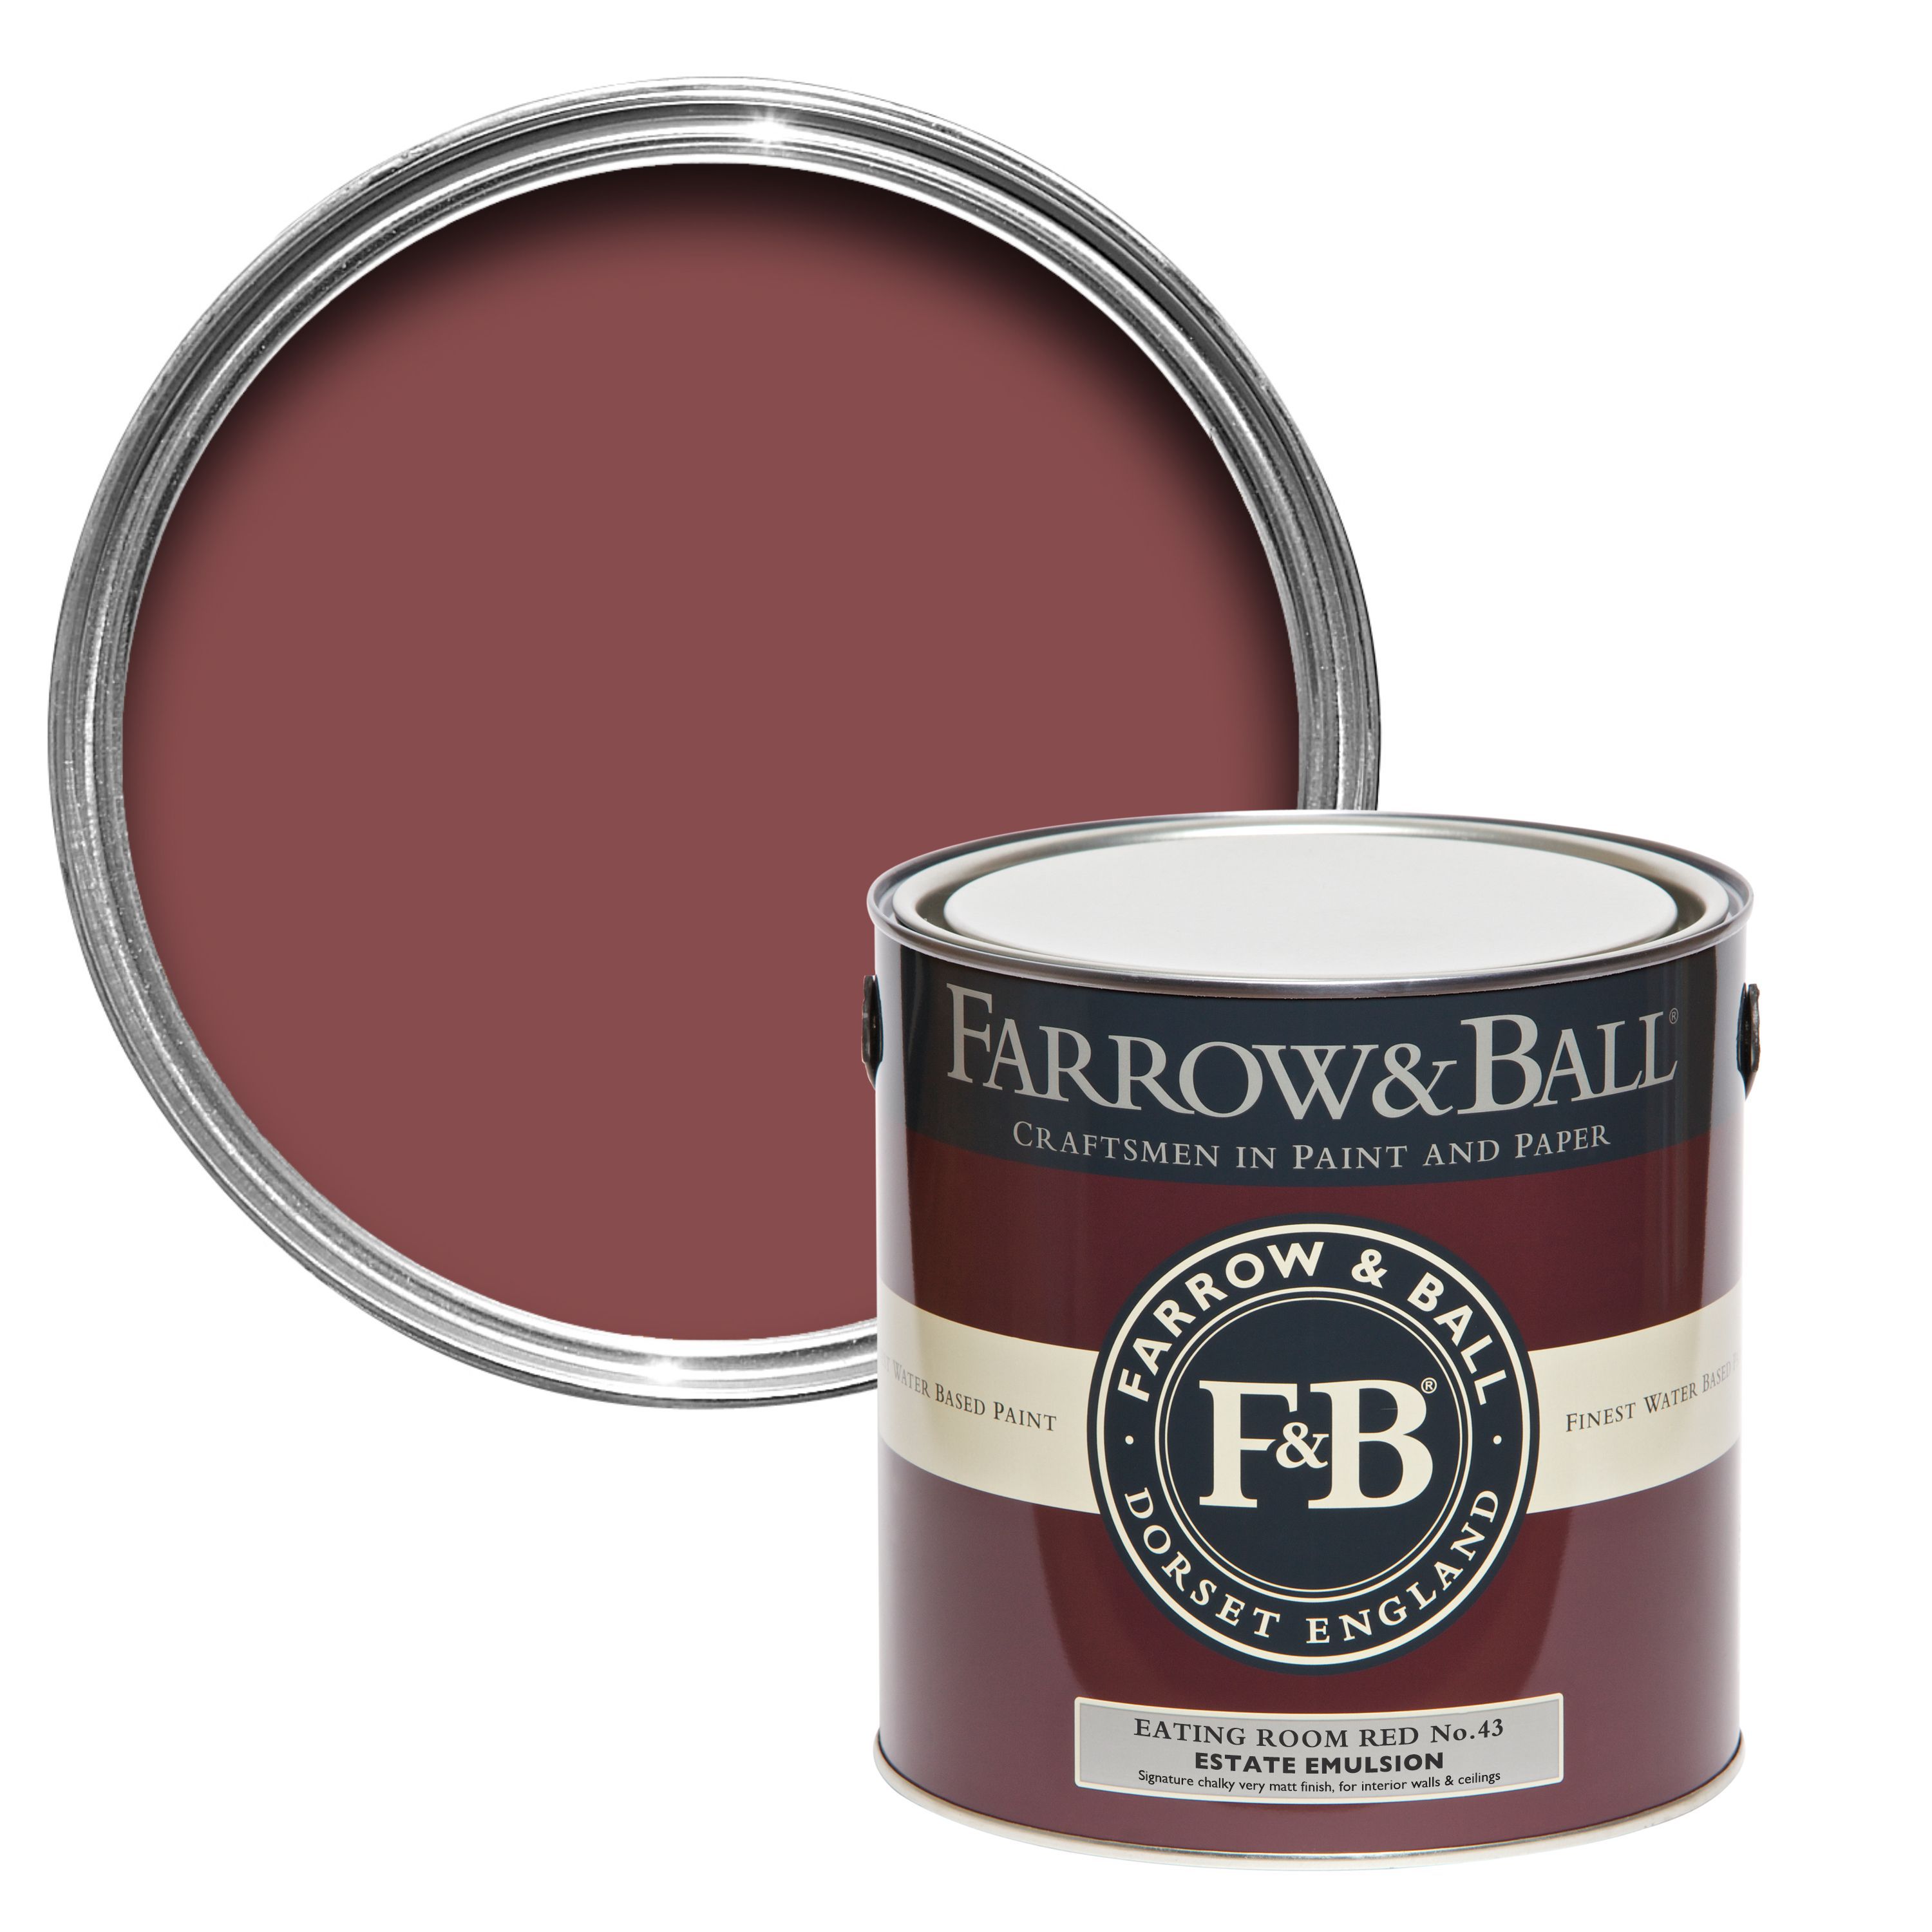 Farrow & Ball Estate Eating room red No.43 Matt Emulsion paint, 2.5L Tester pot